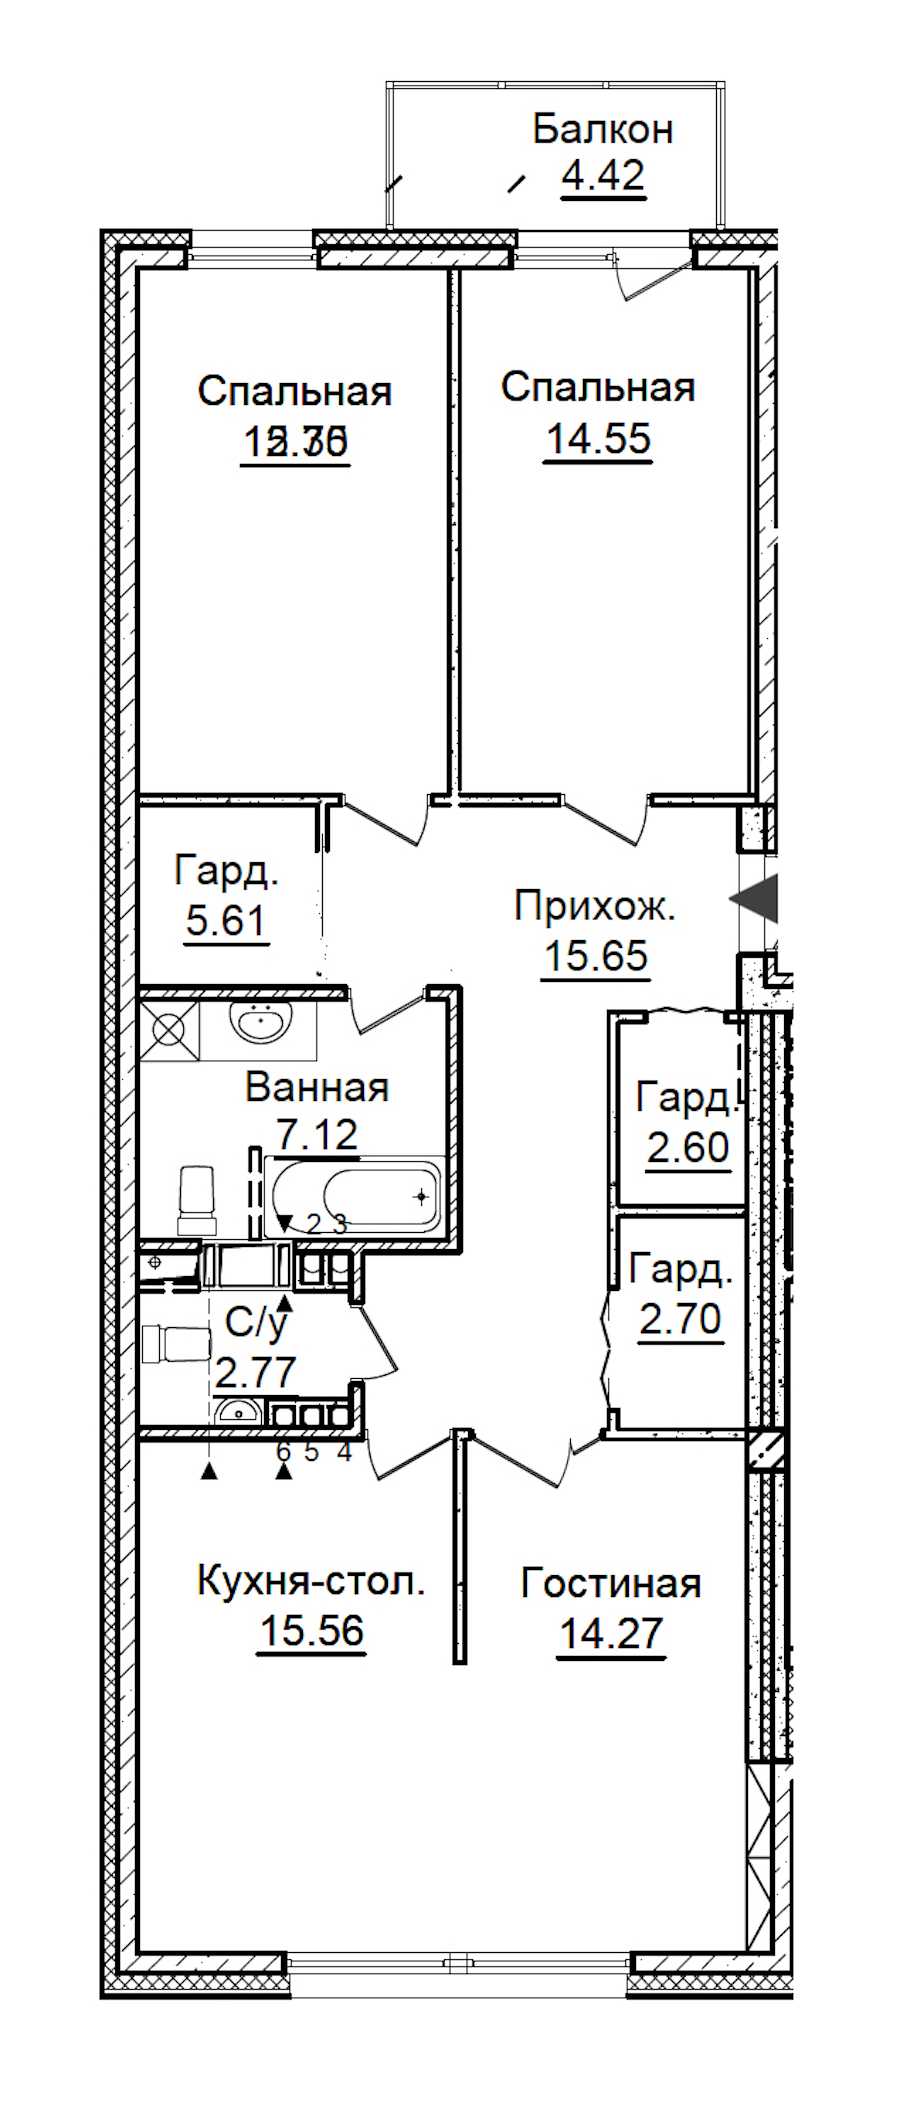 Трехкомнатная квартира в ПСК: площадь 94.53 м2 , этаж: 5 – купить в Санкт-Петербурге